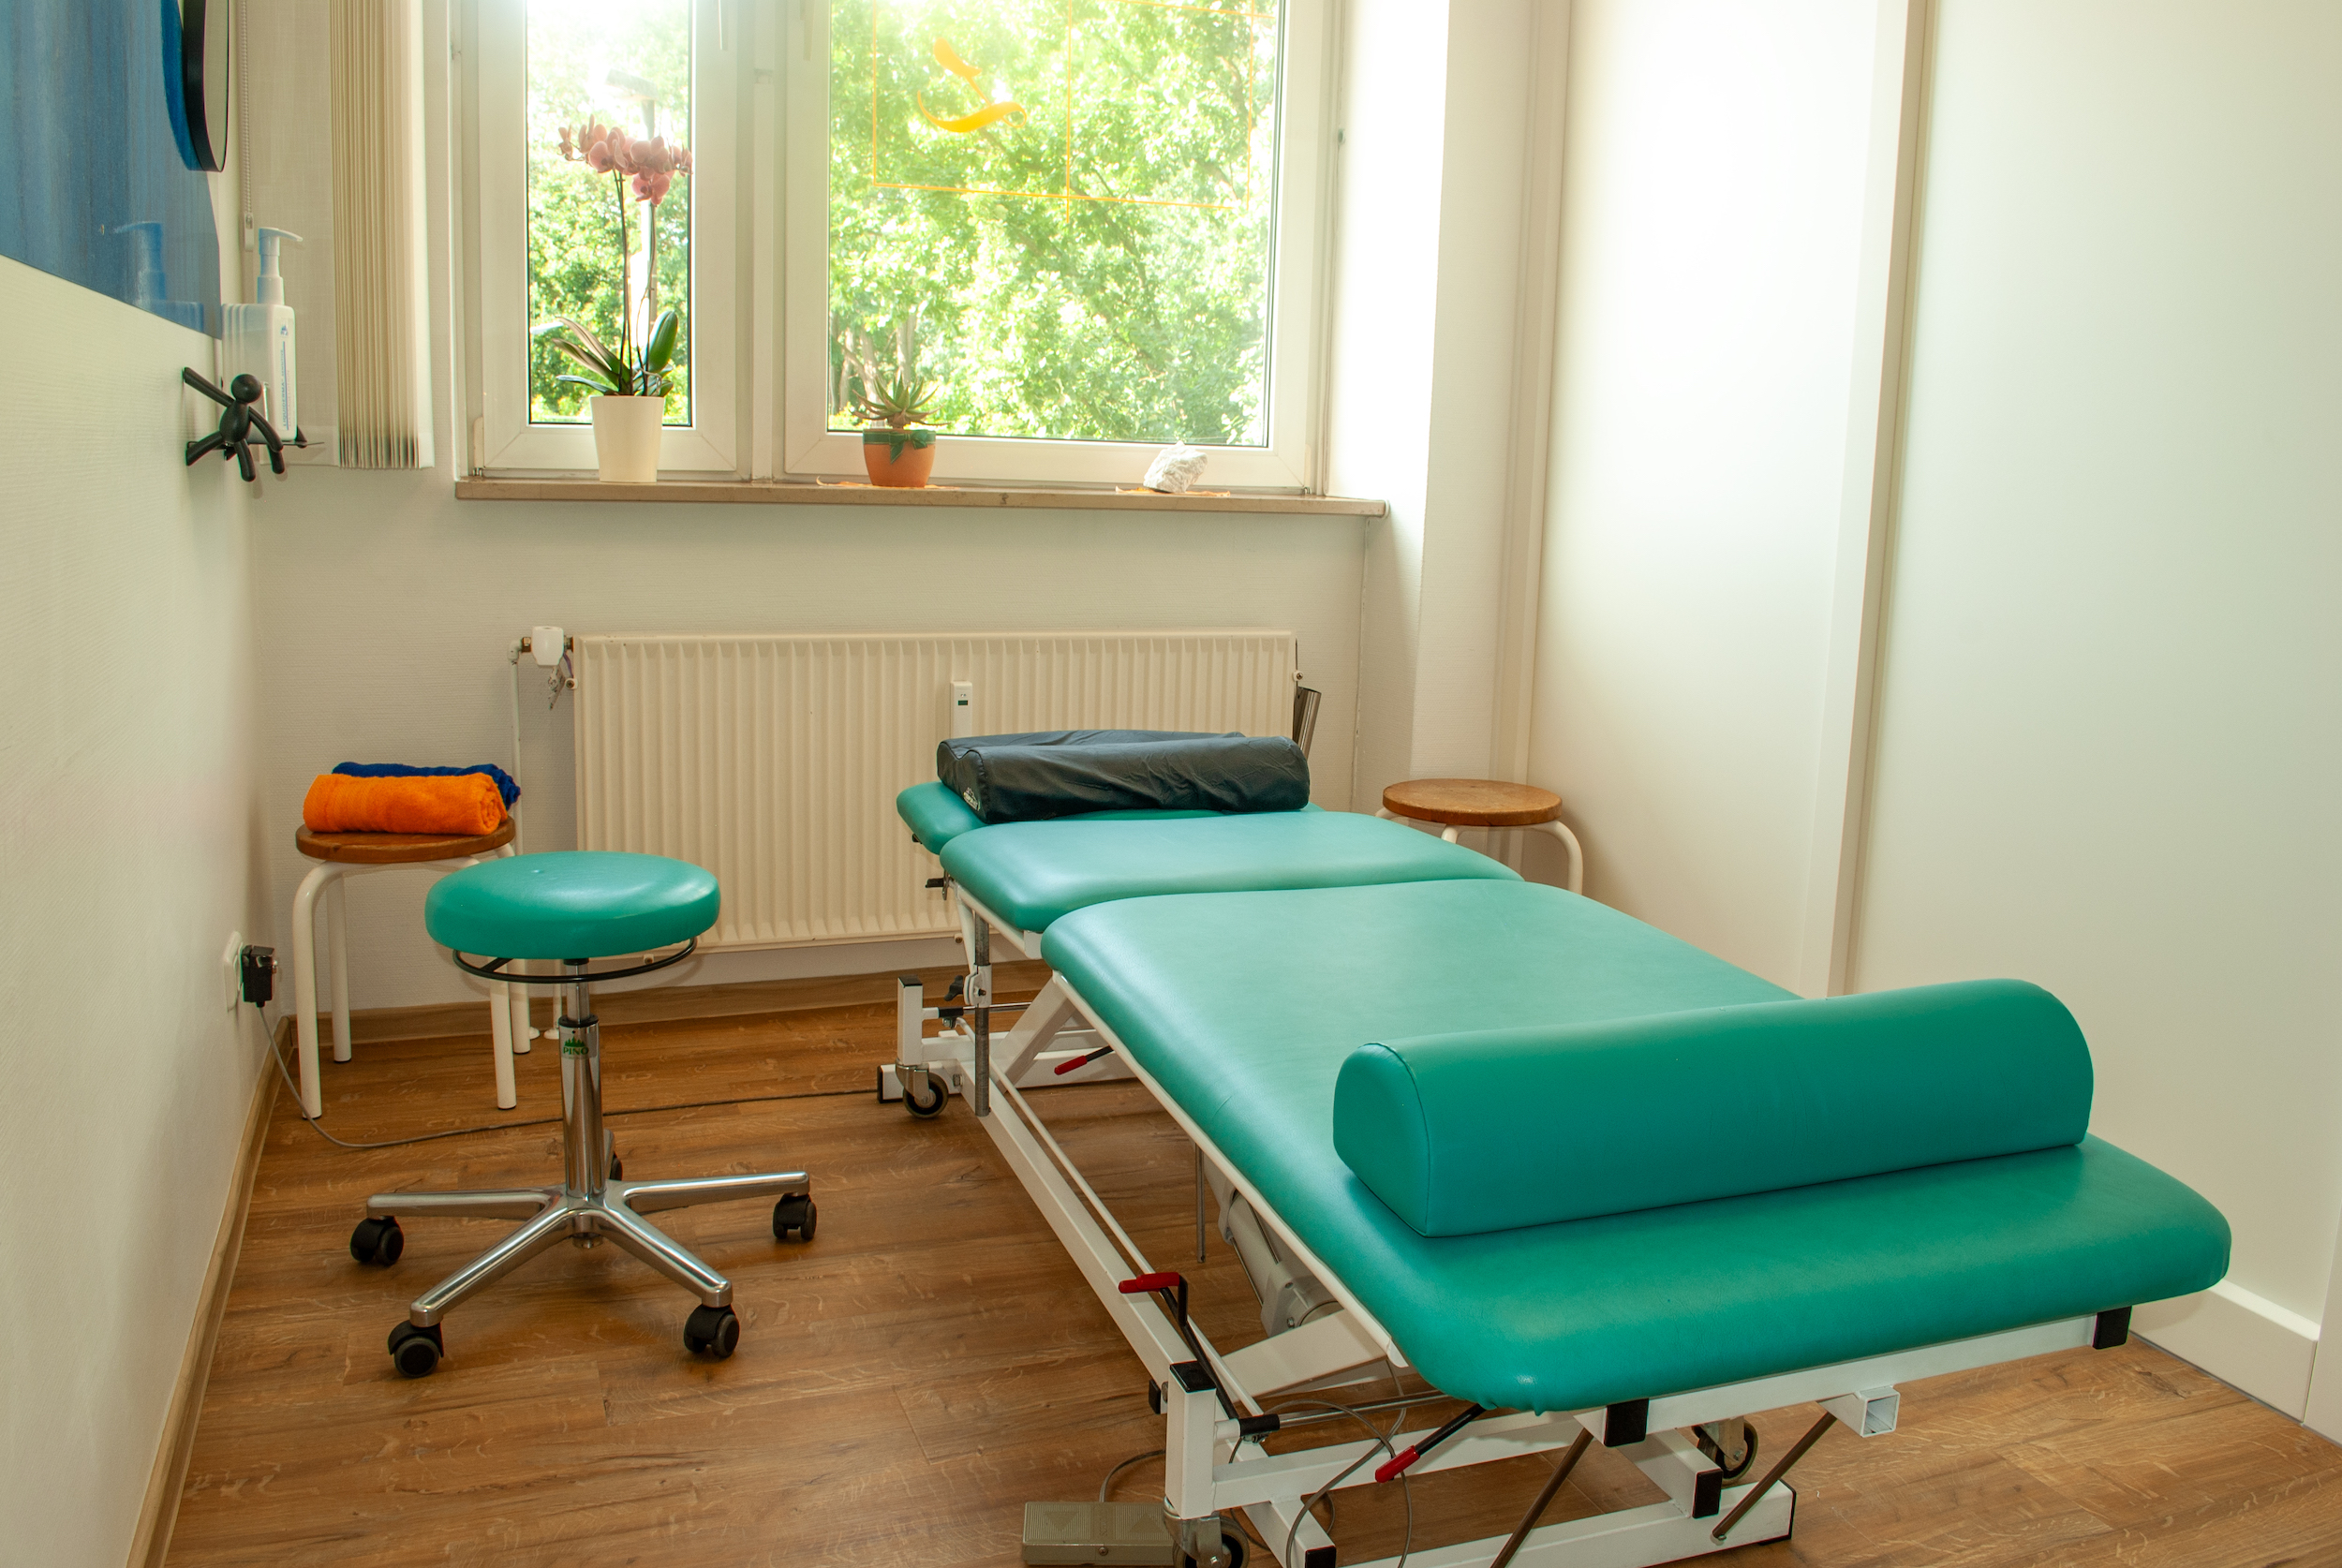 Foto von einem Therapieraum mit einer grünen Therapieliege